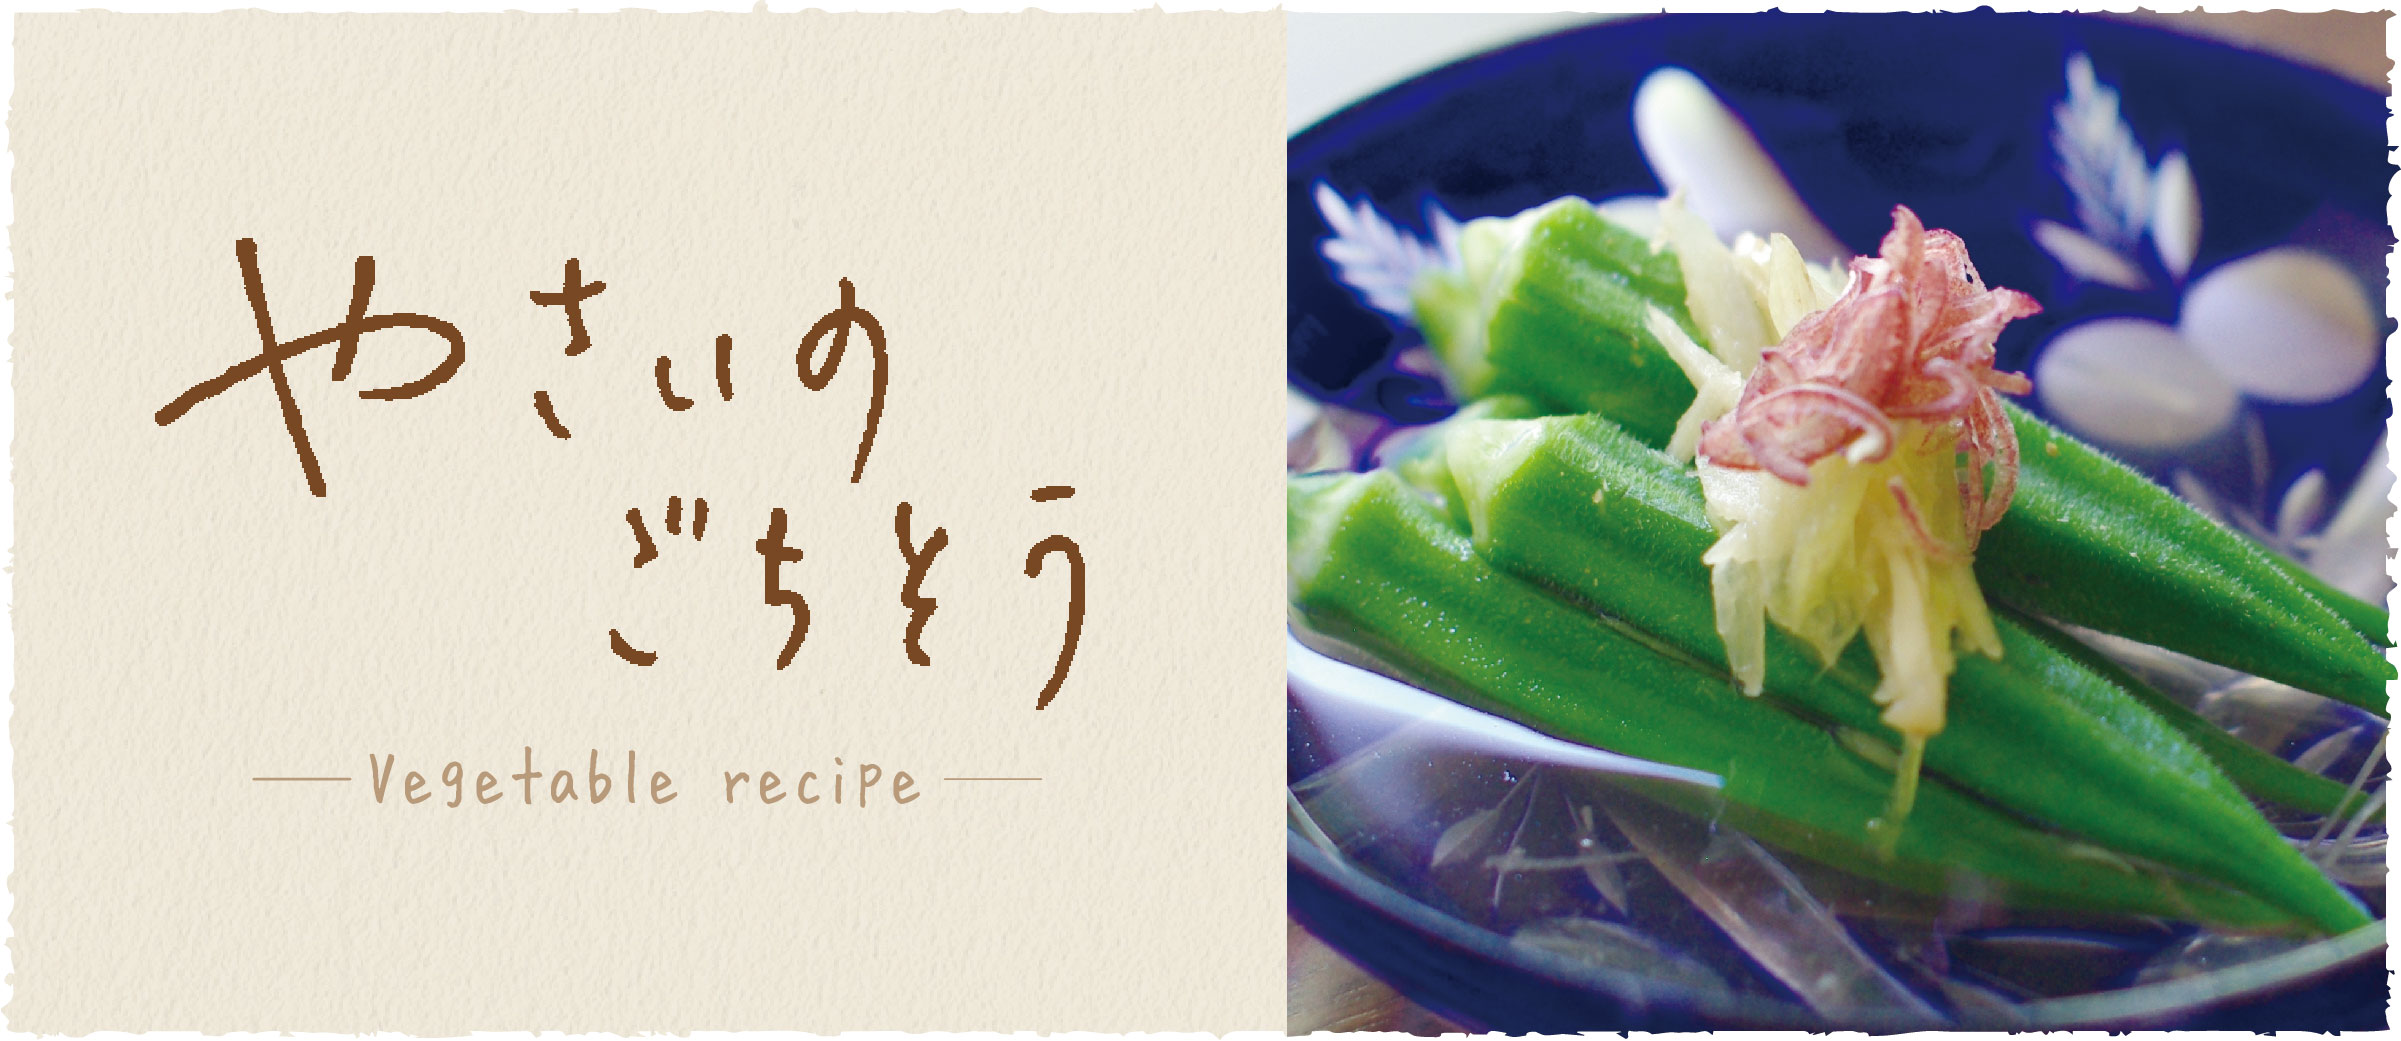 オクラの生姜マリネ - おうち時間がもっと充実する、京都のおばんざいレシピ伝授